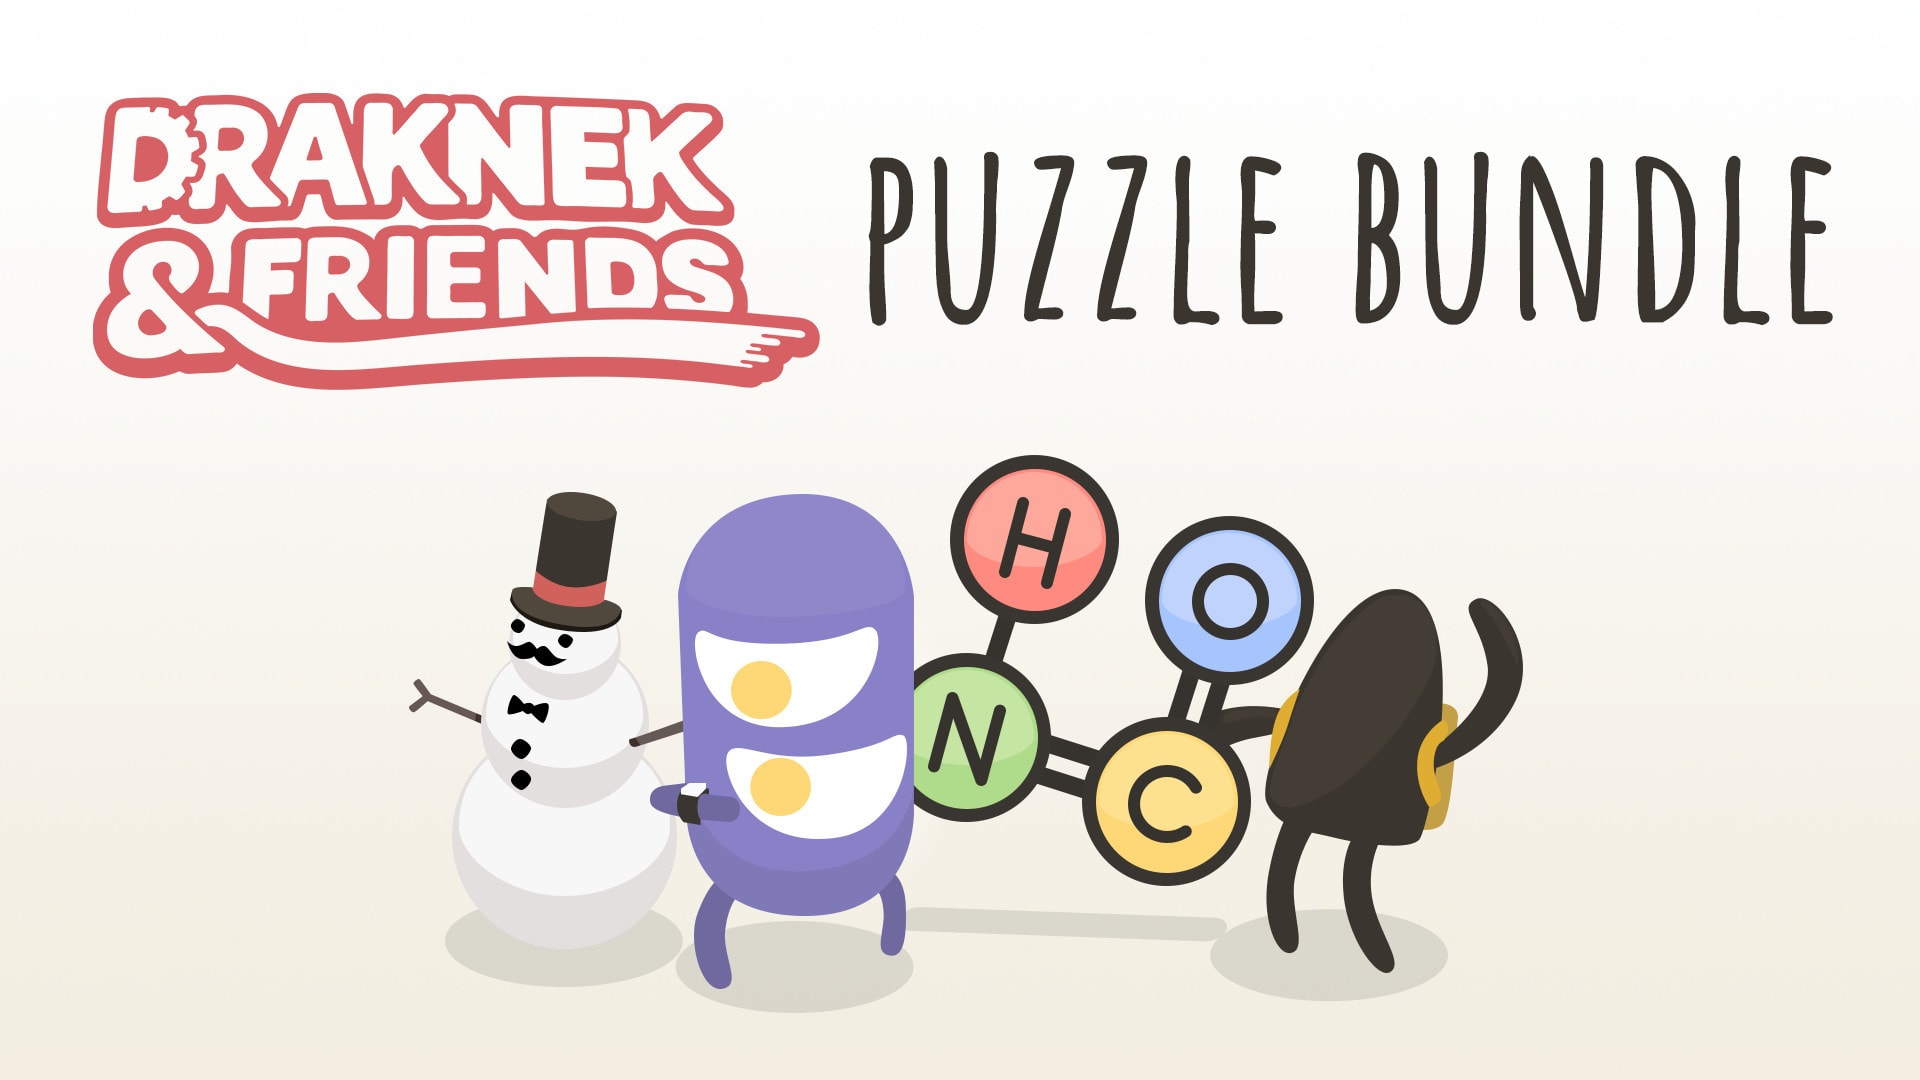 Draknek and Friends Puzzle Bundle